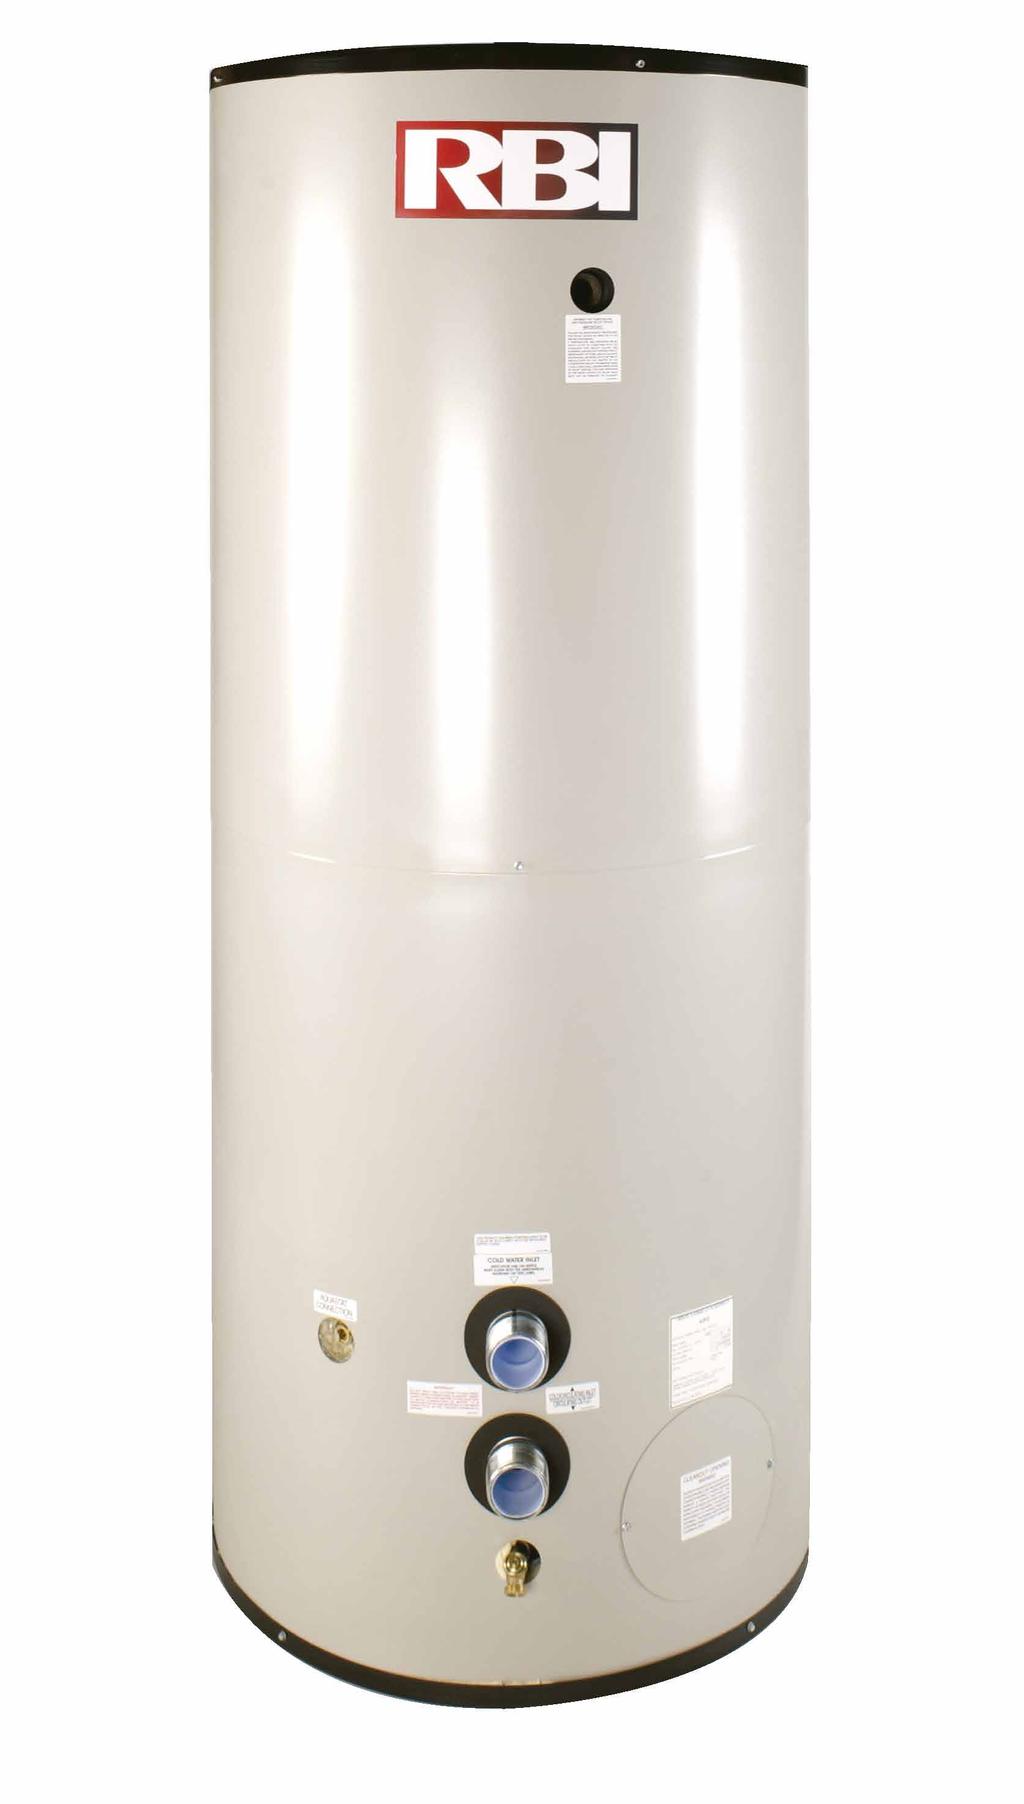 8 257 DTJ-2500 2,500 132 264 DTJ-3200 3,200 132 325 Importados Con y sin aislamiento Certificación ASME Sección HLW (Lined Potable Water Heater) Tanque